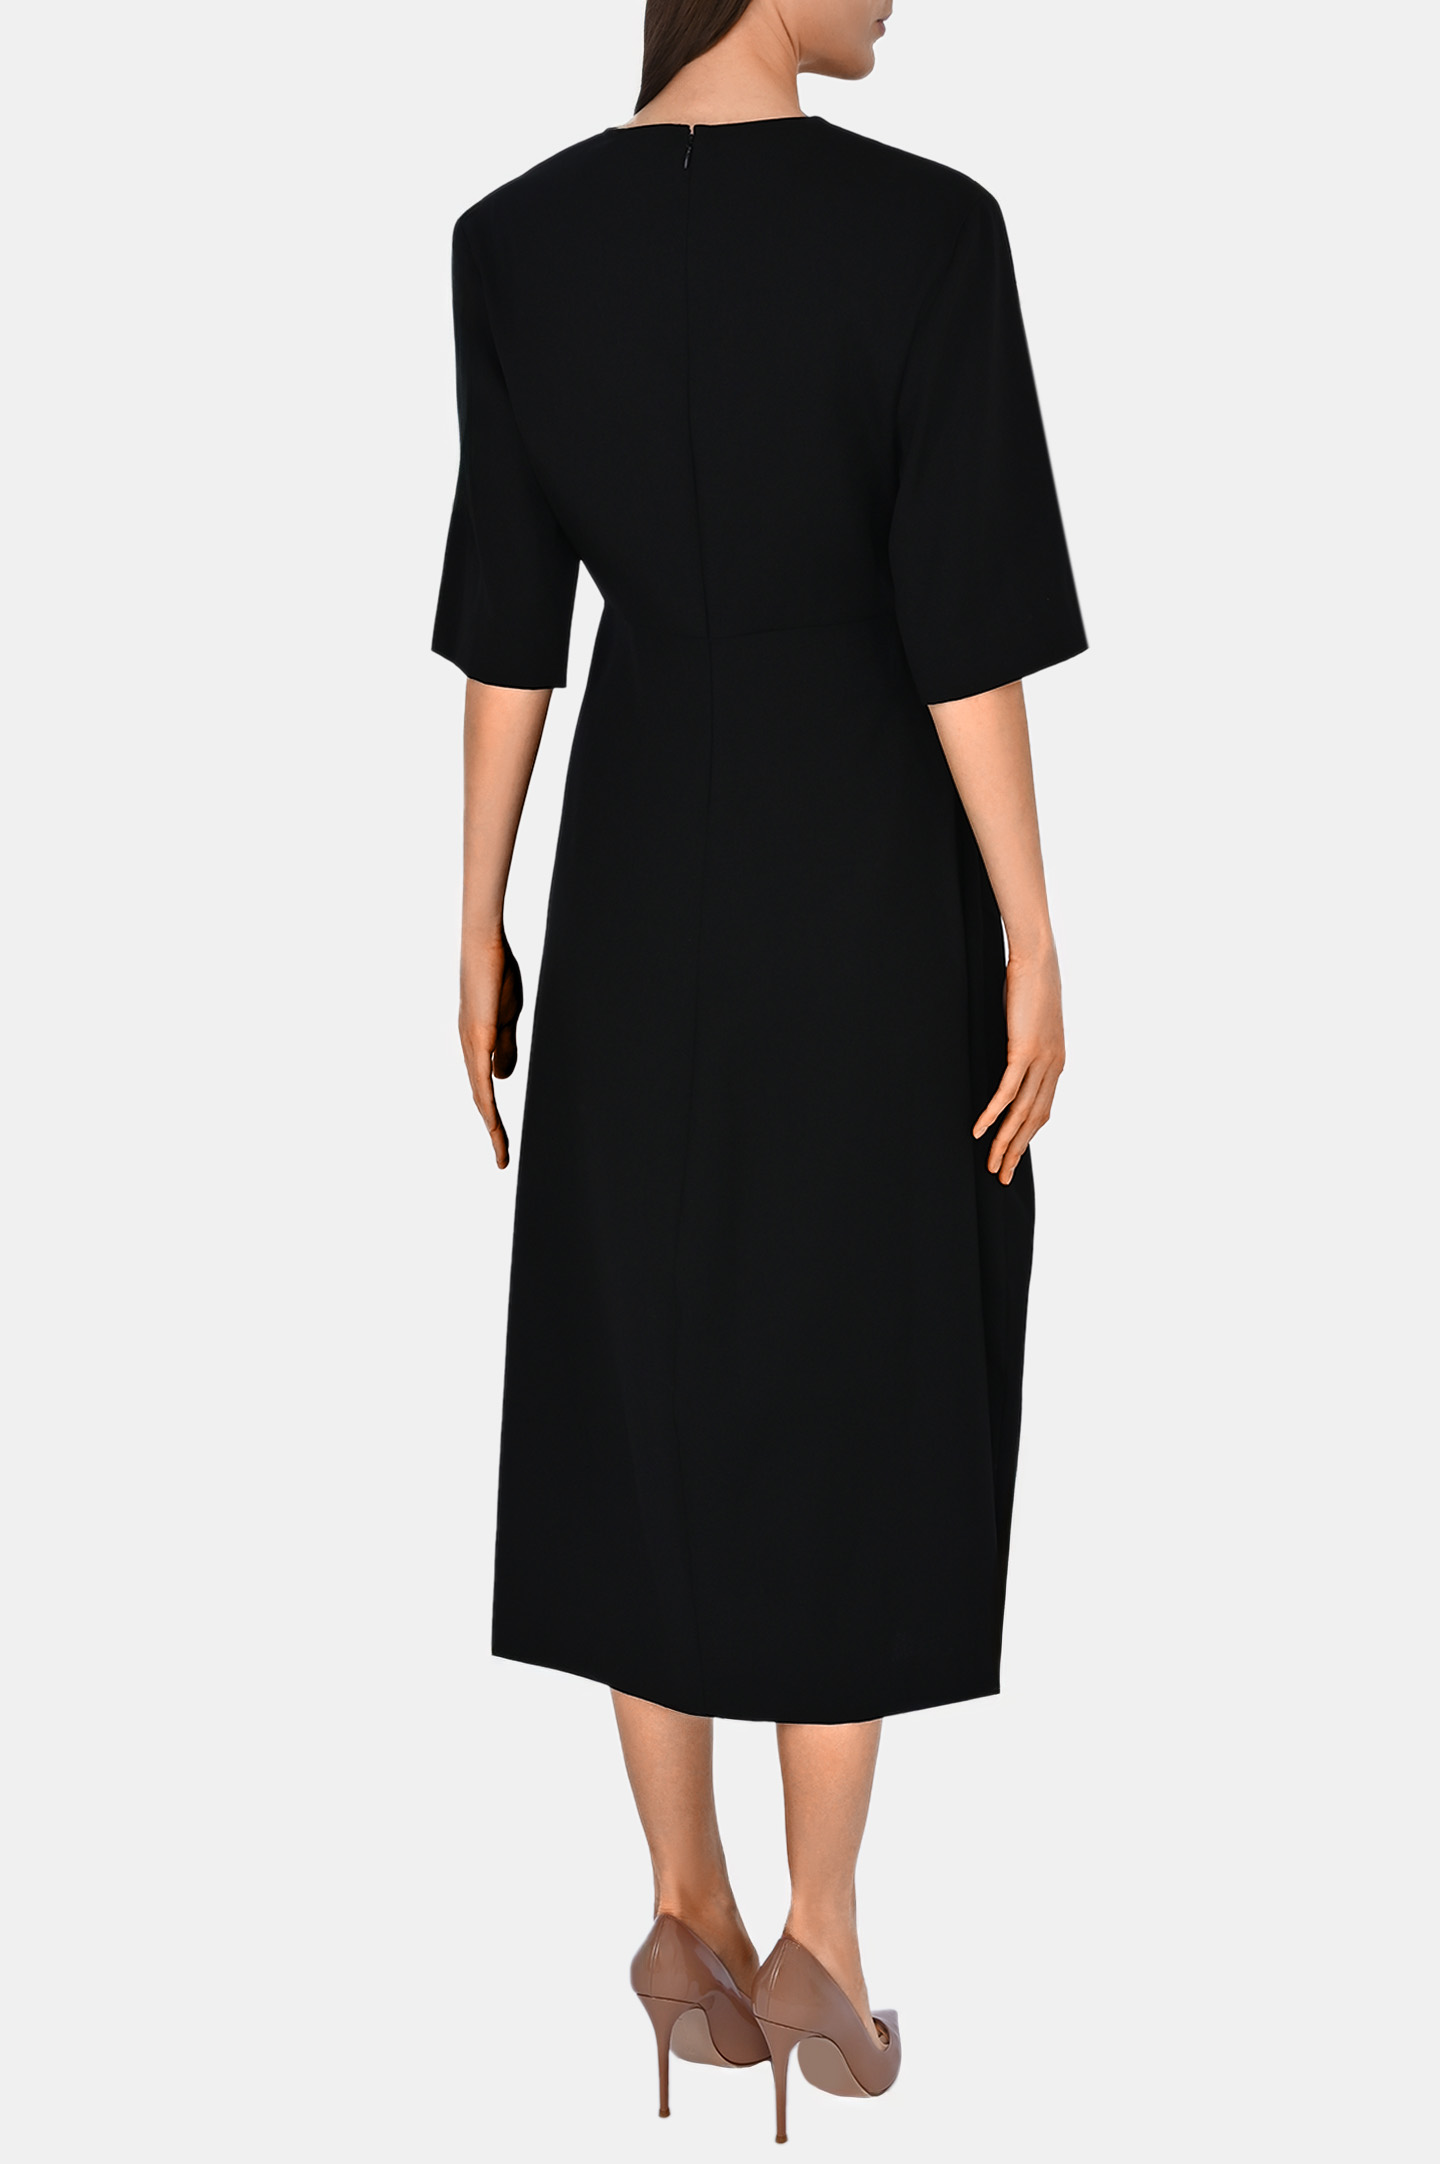 Платье FABIANA FILIPPI ABD213F146, цвет: Черный, Женский